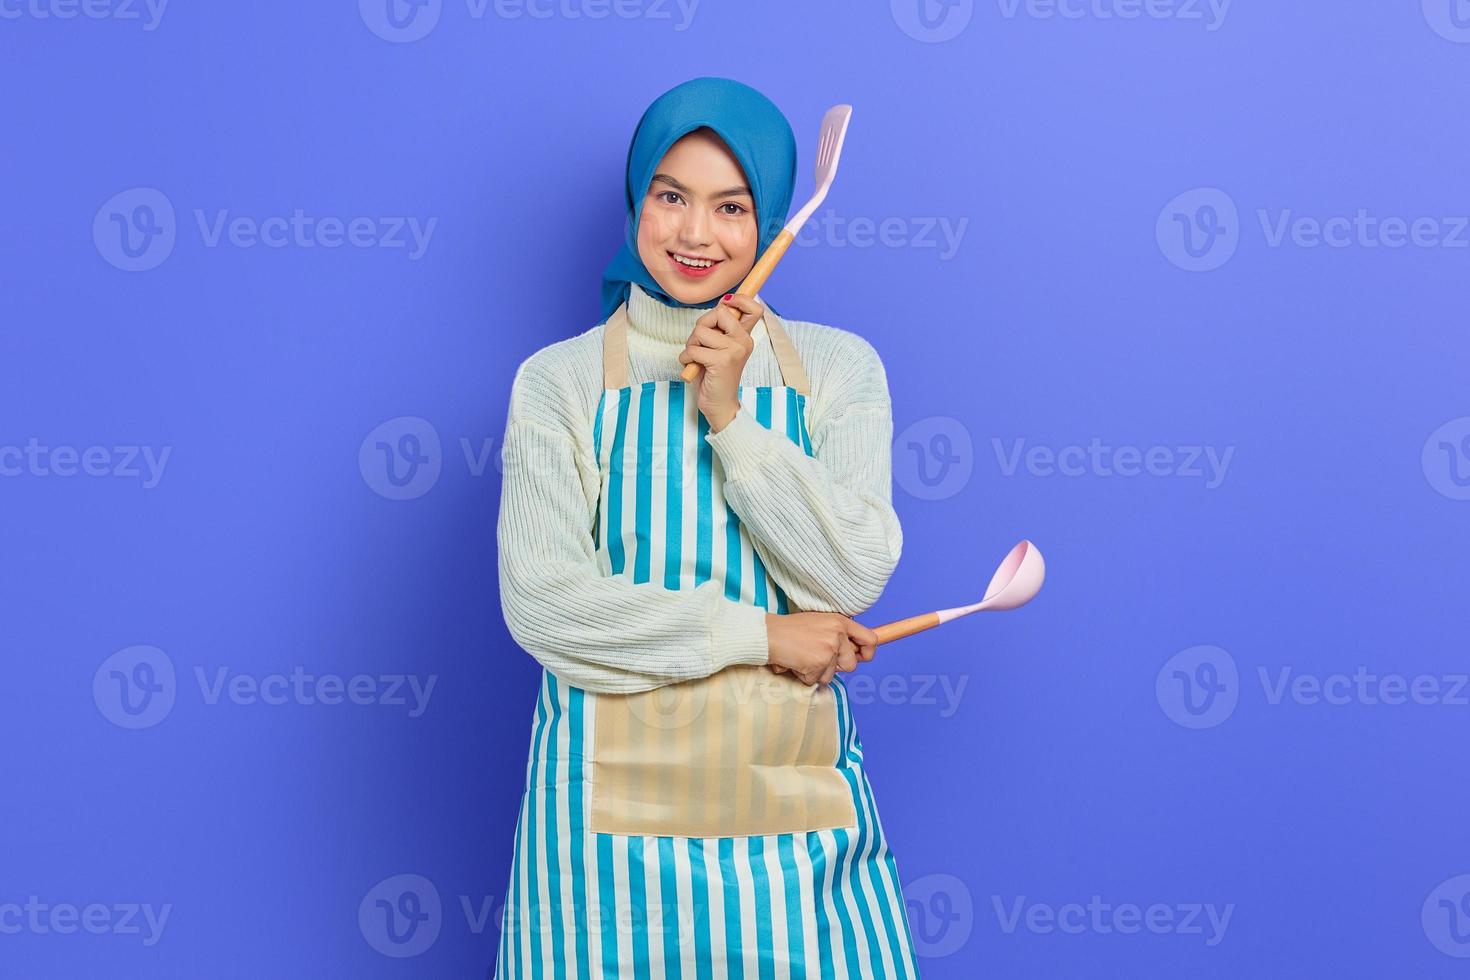 vrolijke jonge Aziatische vrouw huisvrouw in witte schort en trui met lepel soep en spatel terwijl het doen van huishoudelijk werk geïsoleerd op paarse achtergrond studio portret. huishoudconcept foto